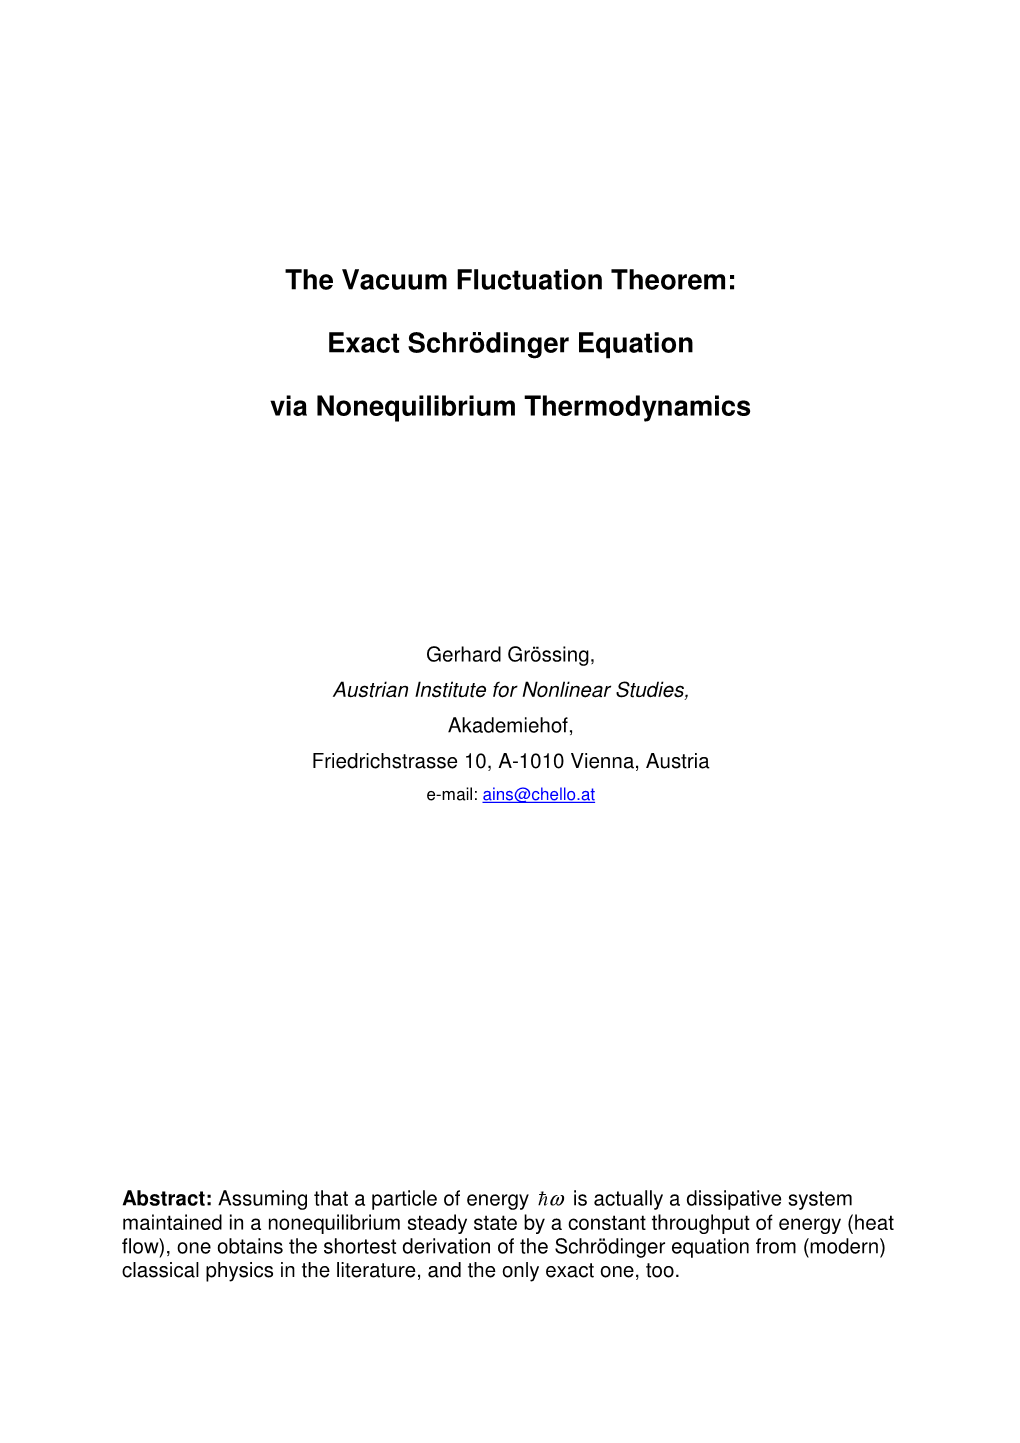 The Vacuum Fluctuation Theorem: Exact Schrödinger Equation Via Nonequilibrium Thermodynamics